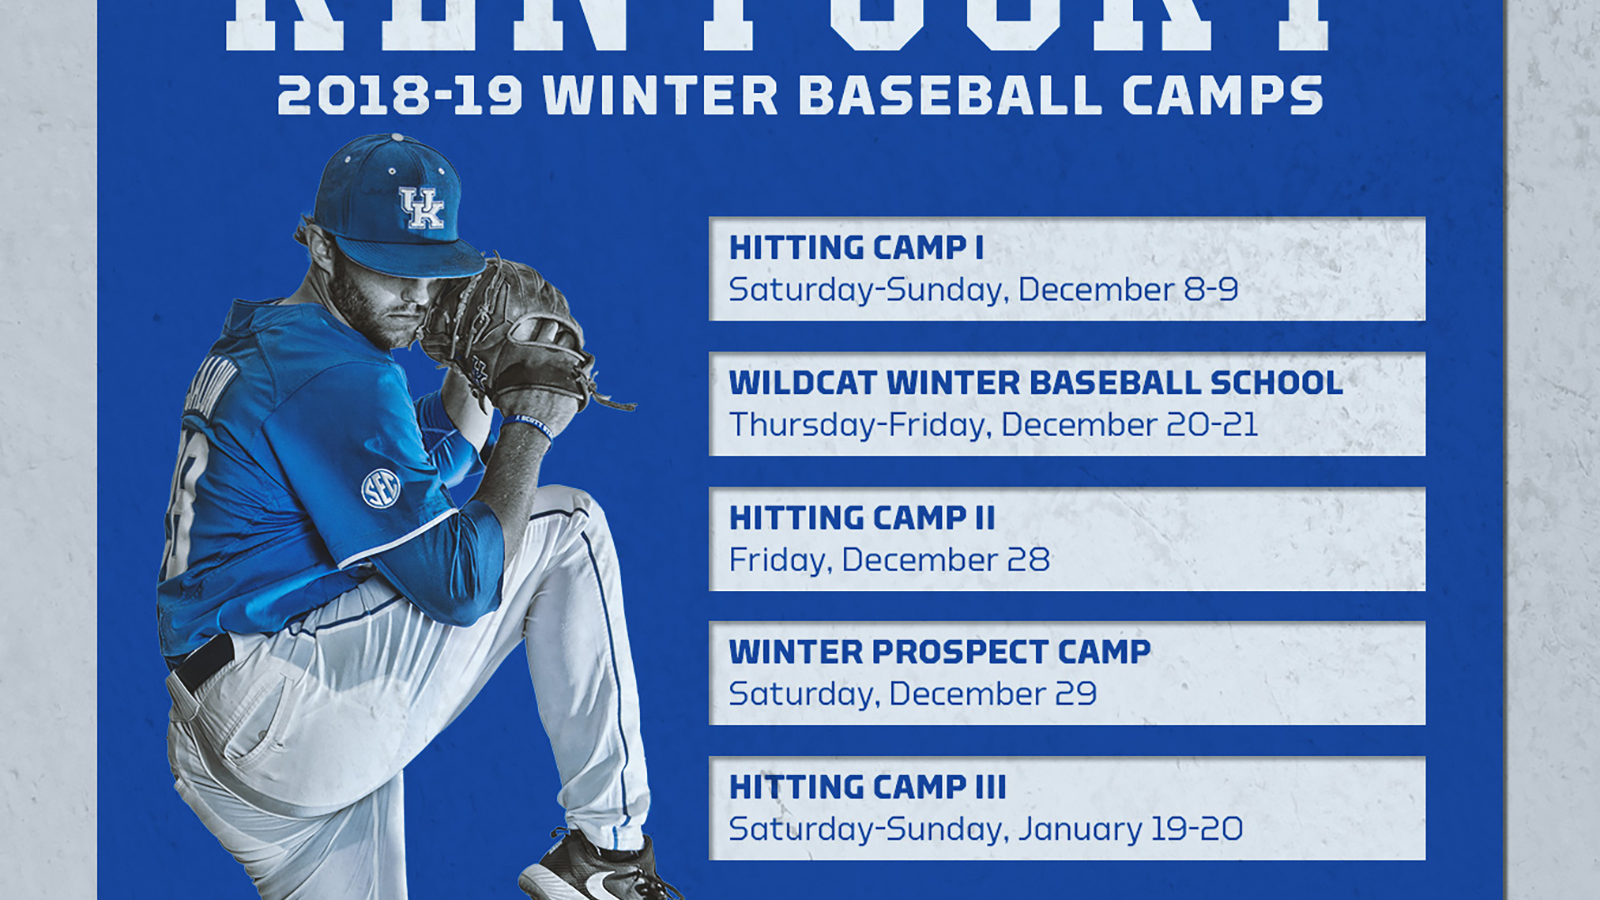 2018 Wildcat Winter Baseball School